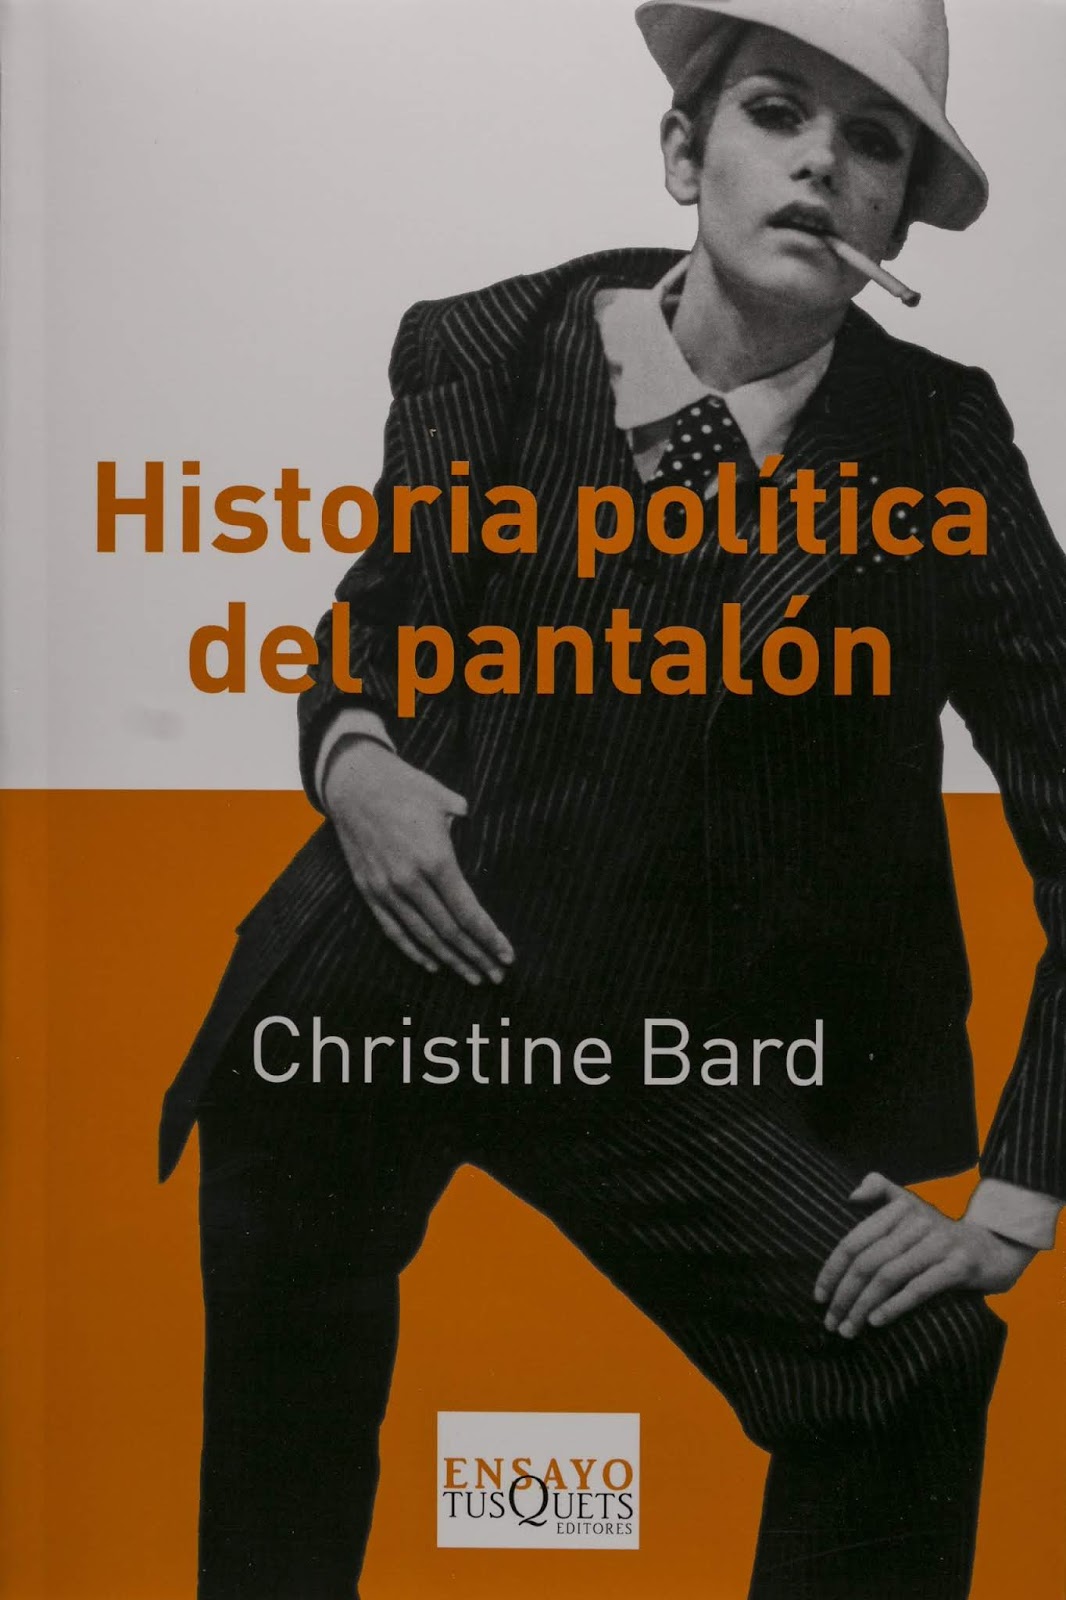 portada de libro La historia política del pantalón de Christine Bard